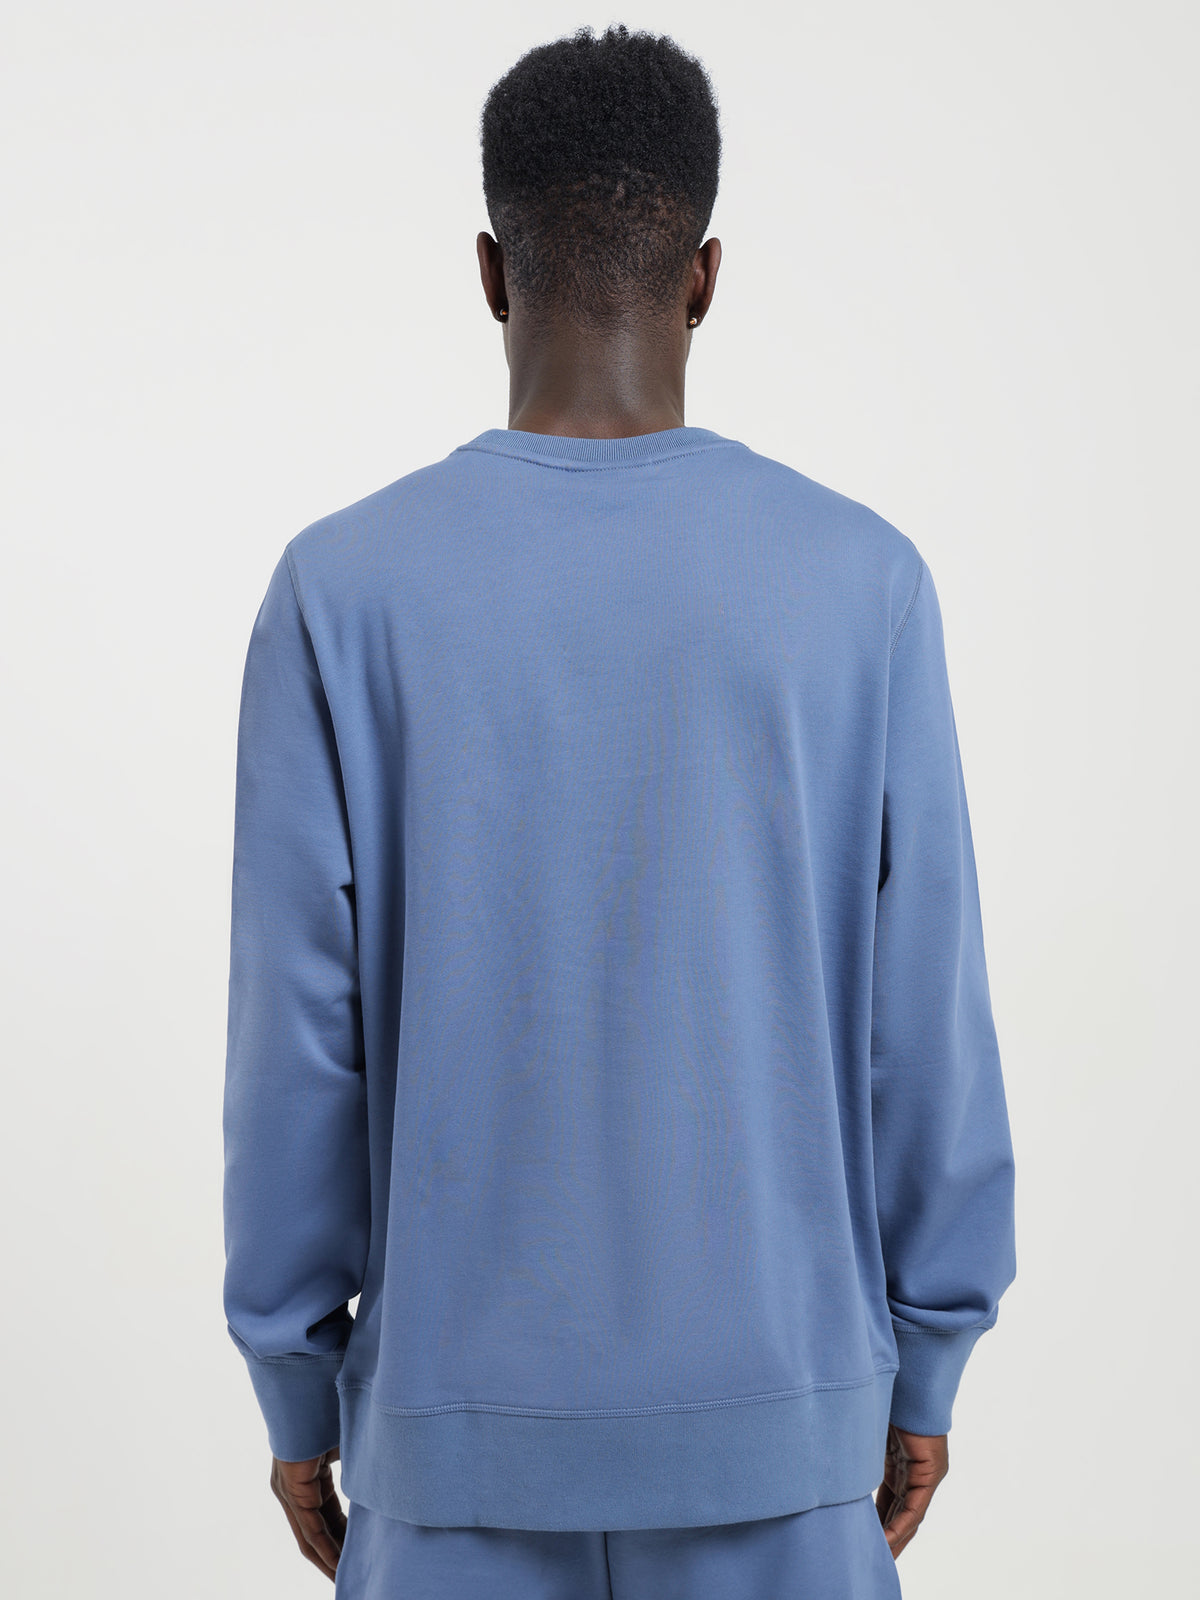 Liam Sweatshirt in Light Blue